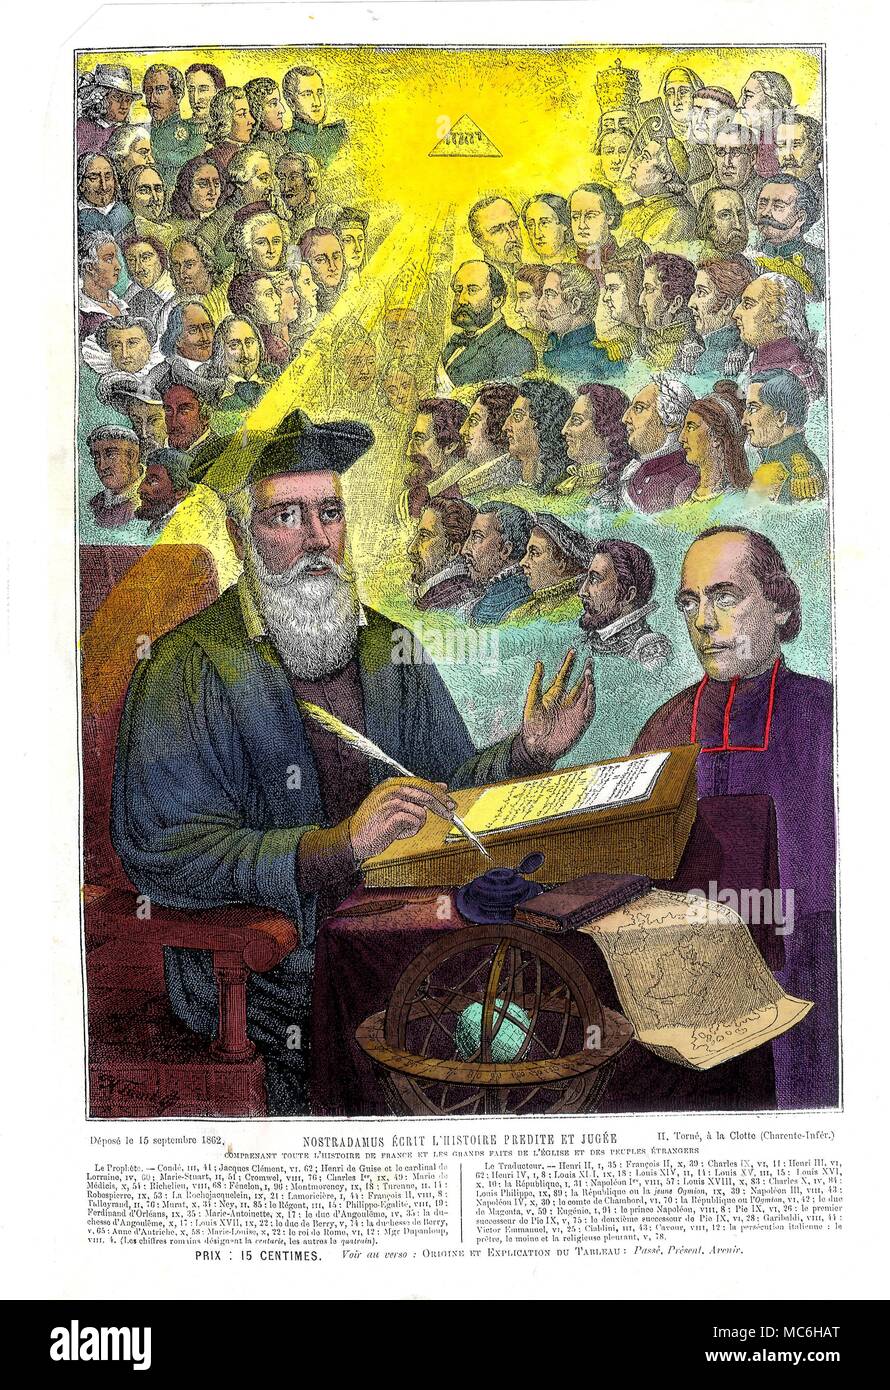 NOSTRADAMUS - PORTRAIT Portrait du prophète, Michel Nostradamus, prédire l'avenir, ou "écrit l'histoire qui est à la fois imprévisible et jugés". Lithographie colorée à la main de 1862, imprimée pour l'AbbÃš TornÃš, l'un des principaux commentateurs du dix-neuvième siècle sur Nostradamus. L'impression a été vendu indépendamment de TornÃš livres sur Nostradamus. L'image représente le AbbÃš regardant en adoration à Nostradamus, dont la tête est illuminée (probablement à la source de son inspiration, ou puissance prophétique) par un rayon de lumière émise par un triangle maçonnique contenant le tétragramme, o Banque D'Images